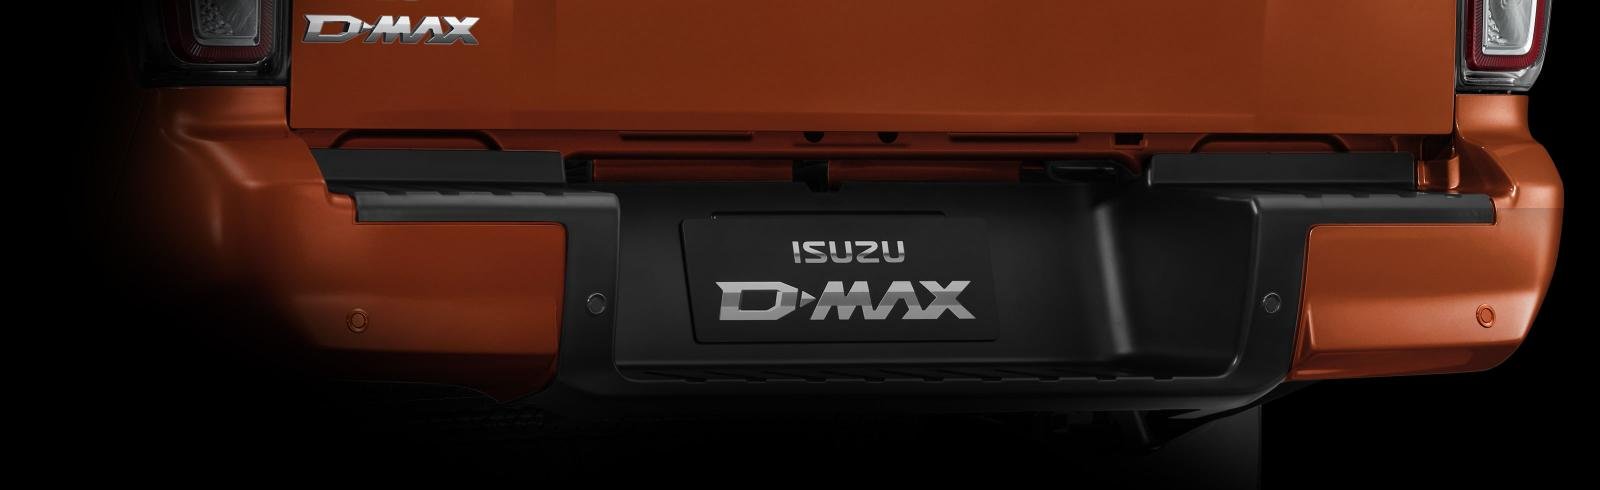 Đuôi xe Isuzu D-Max 2022 thiết kế gọn gàng, vuông vức